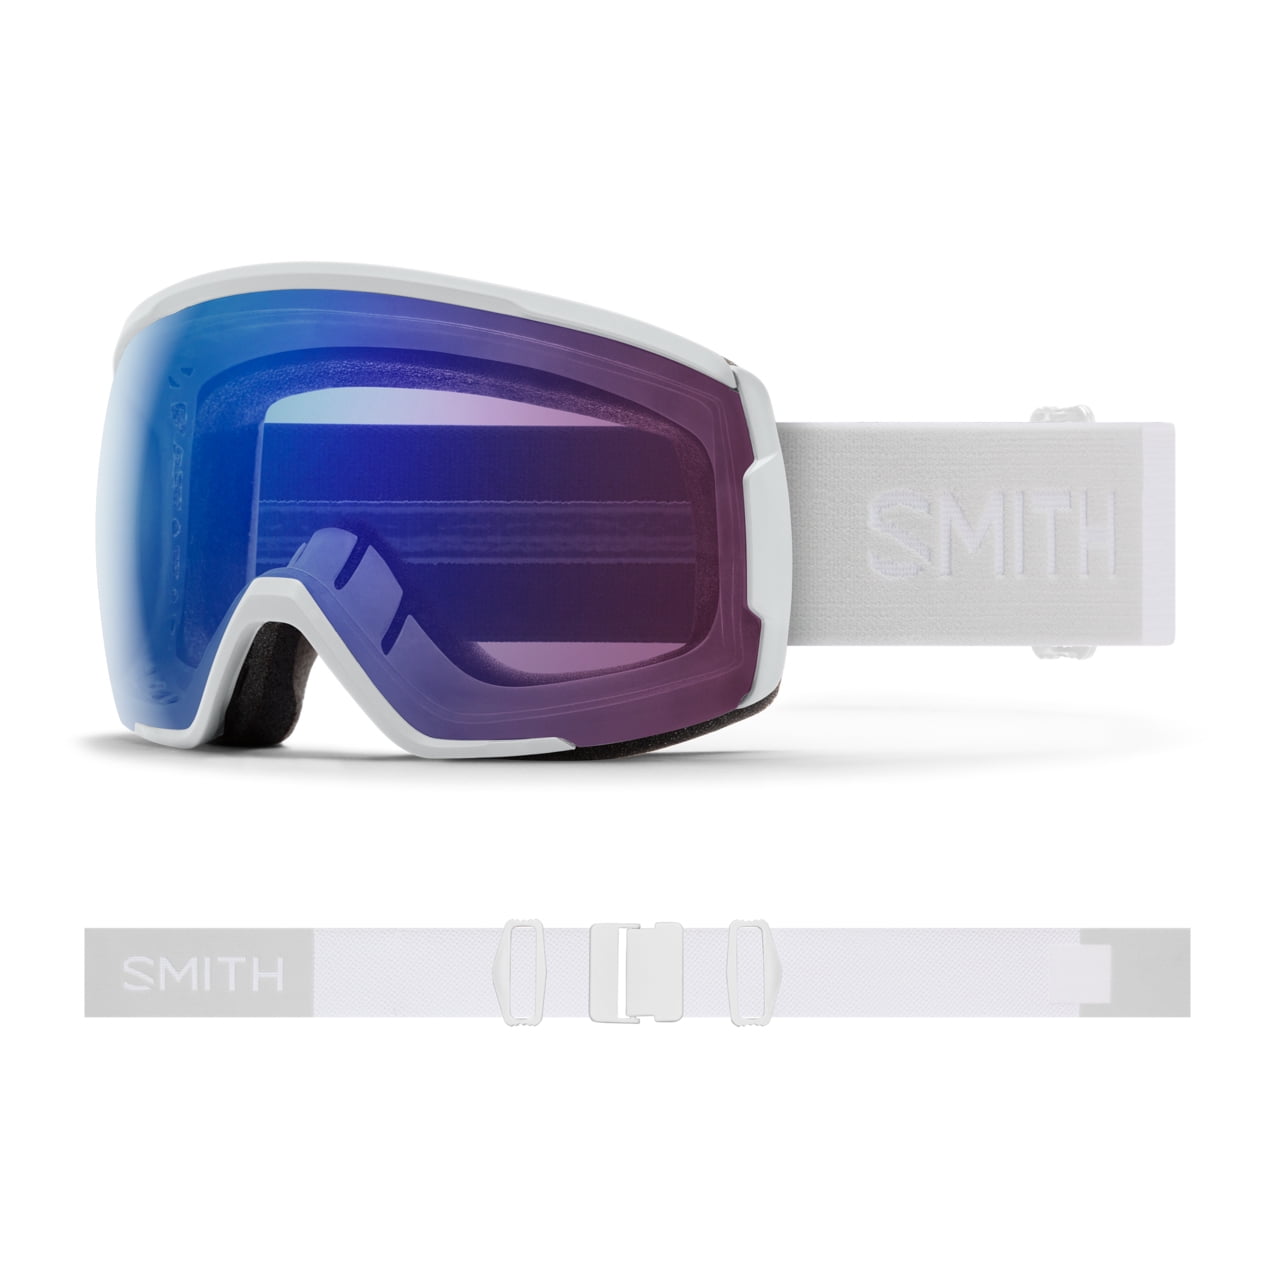 Smith Optics Proxy Goggles - White Vapor; ChromaPop Photochromic Rose Flash